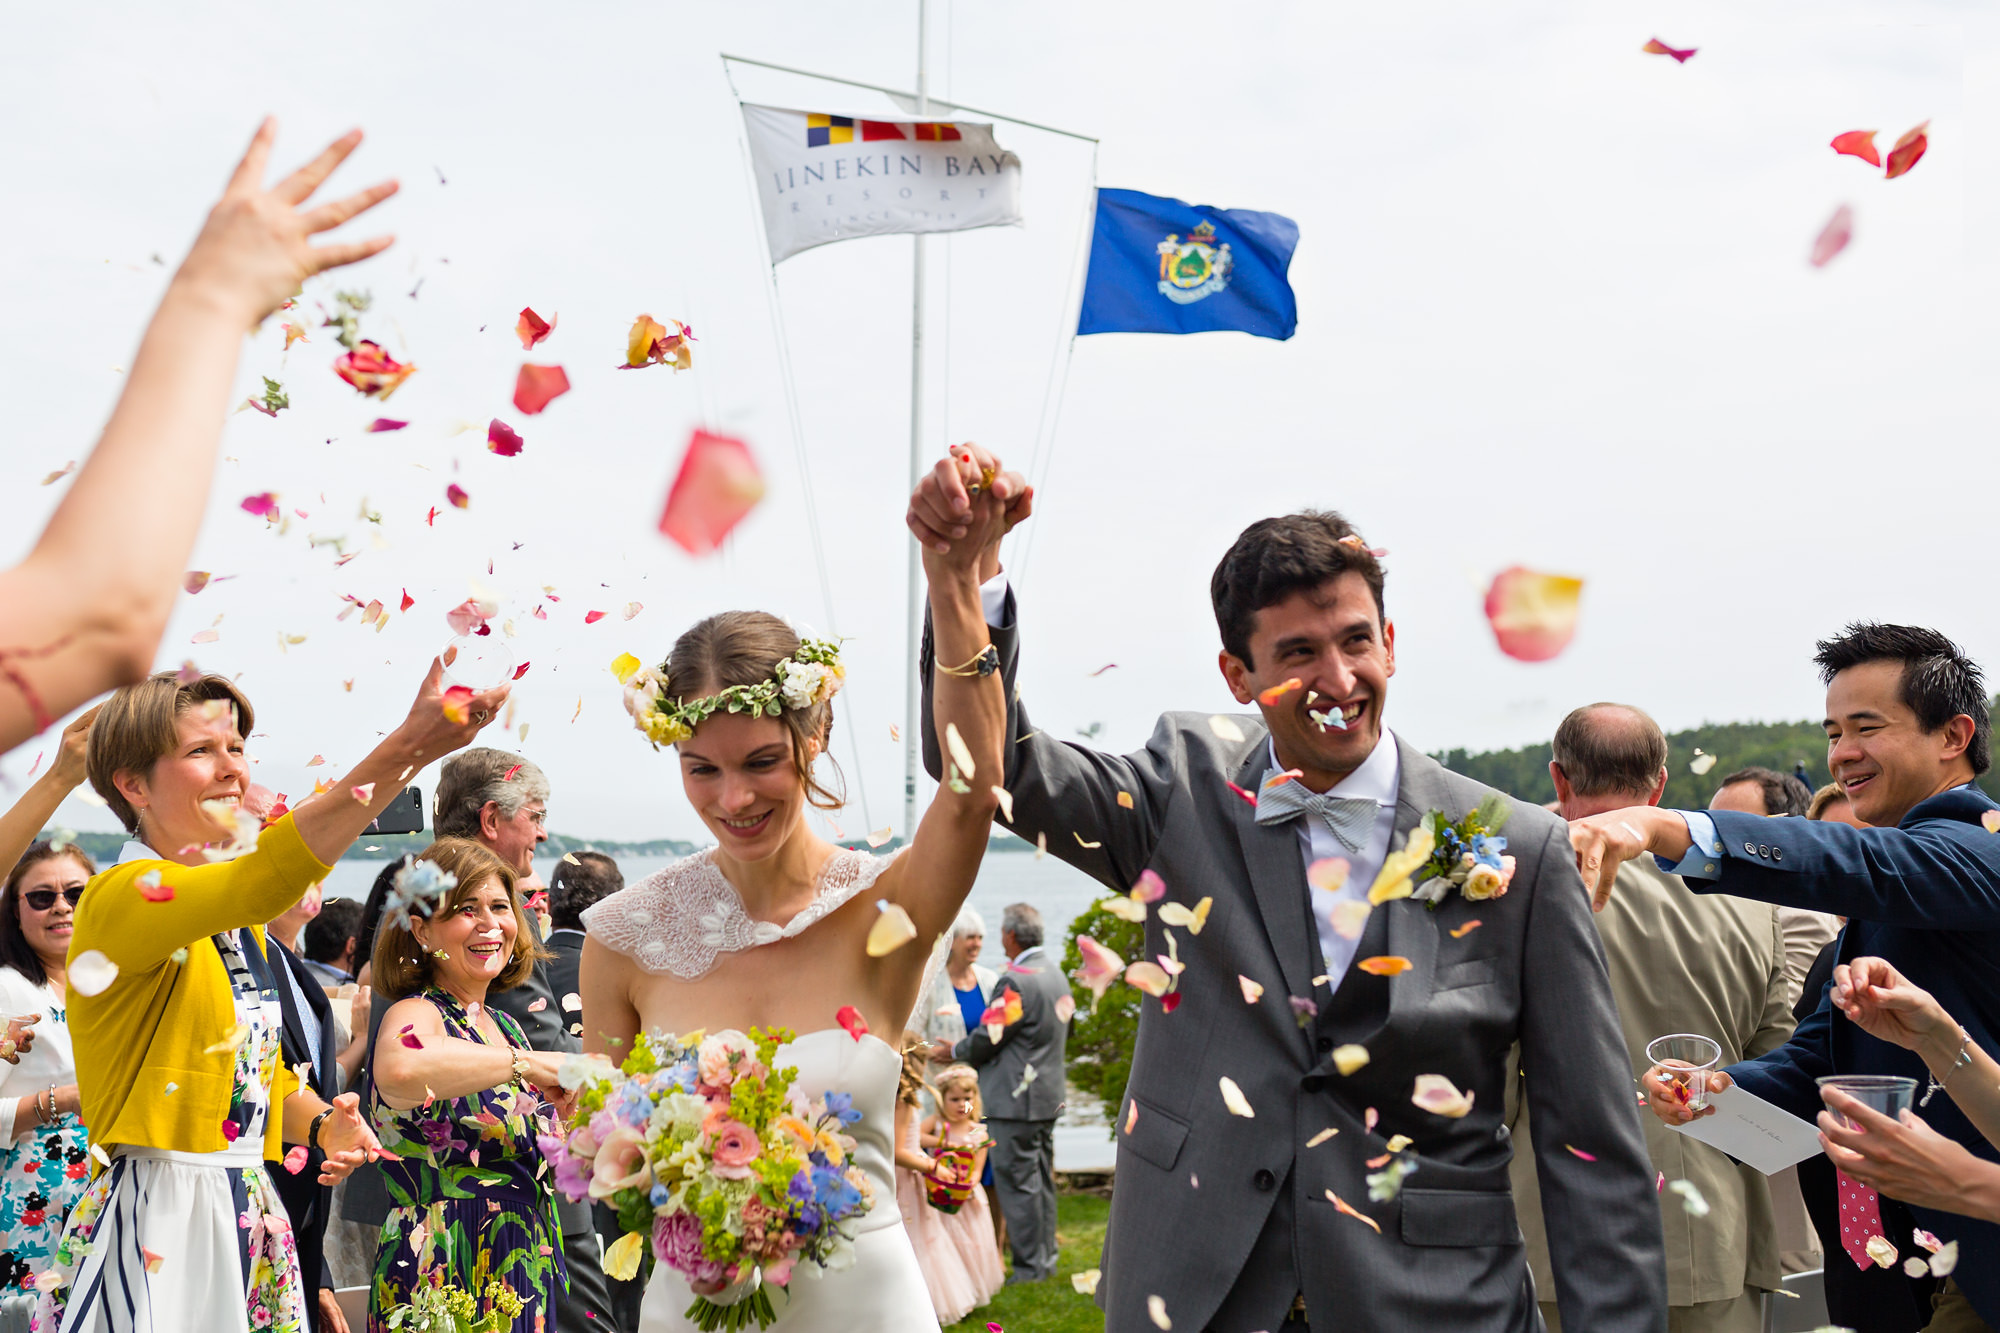 A Linekin Bay Resort wedding ceremony in Boothbay Harbor, Maine